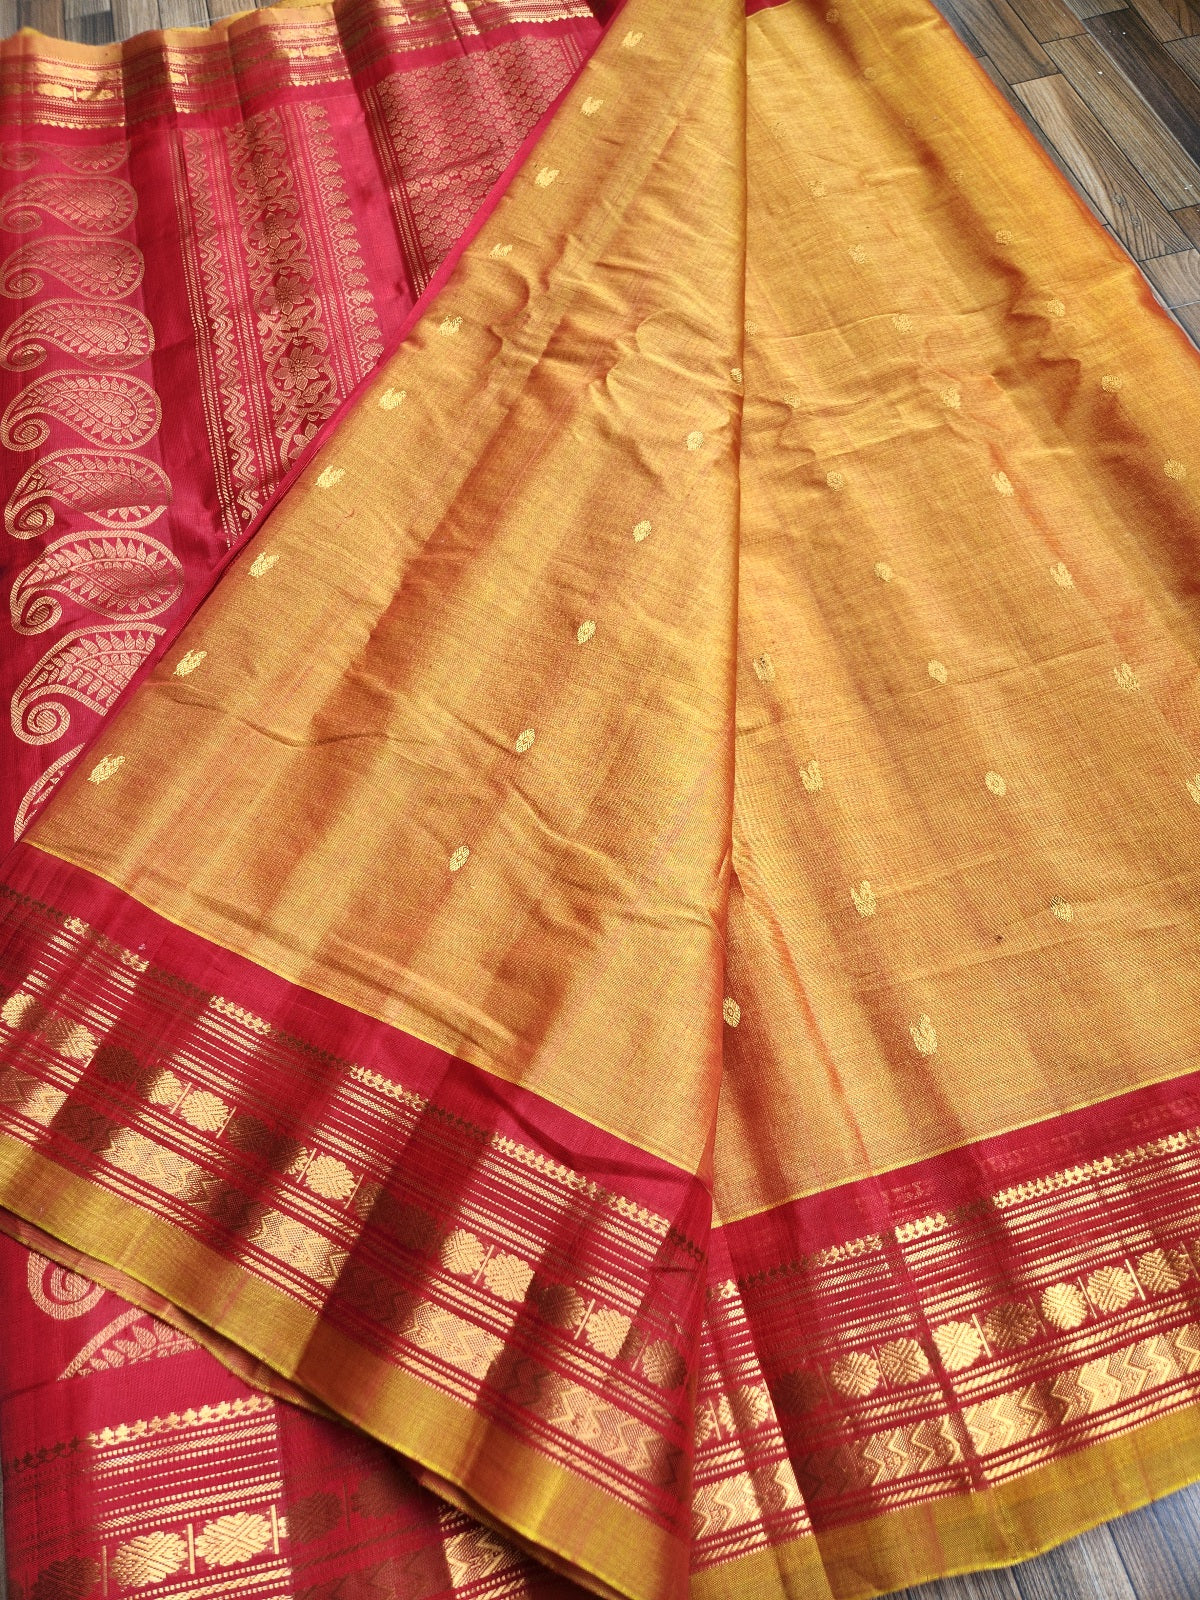 gadwal saree handloom saree Yellow saree wedding shopping SICO saree red saree haldi look